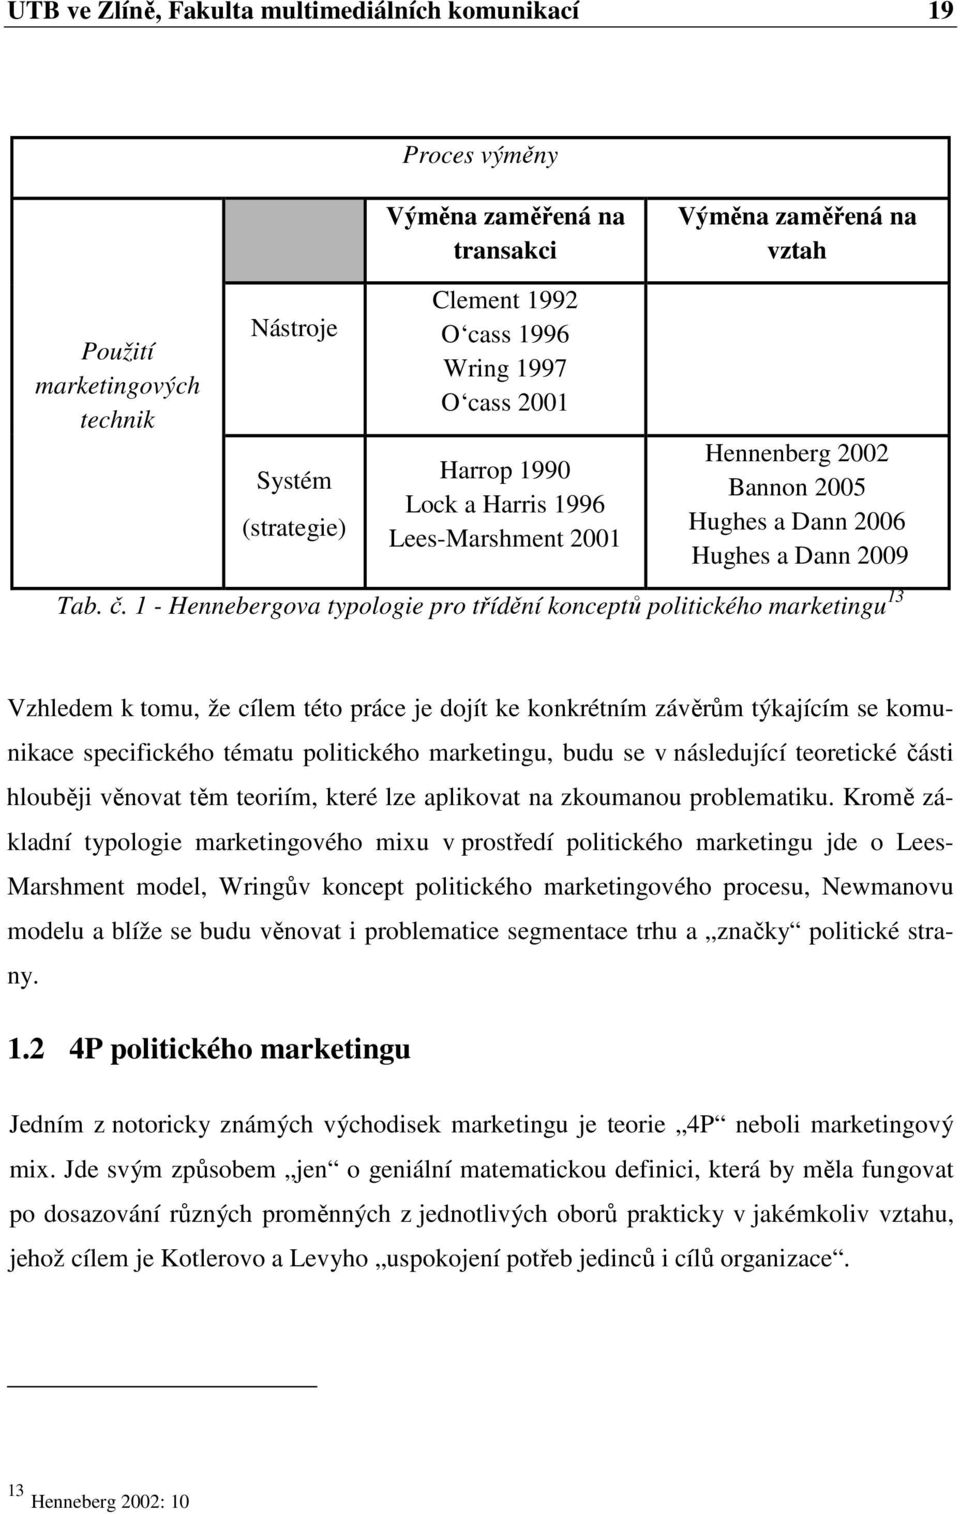 1 - Hennebergova typologie pro třídění konceptů politického marketingu 13 Vzhledem k tomu, že cílem této práce je dojít ke konkrétním závěrům týkajícím se komunikace specifického tématu politického